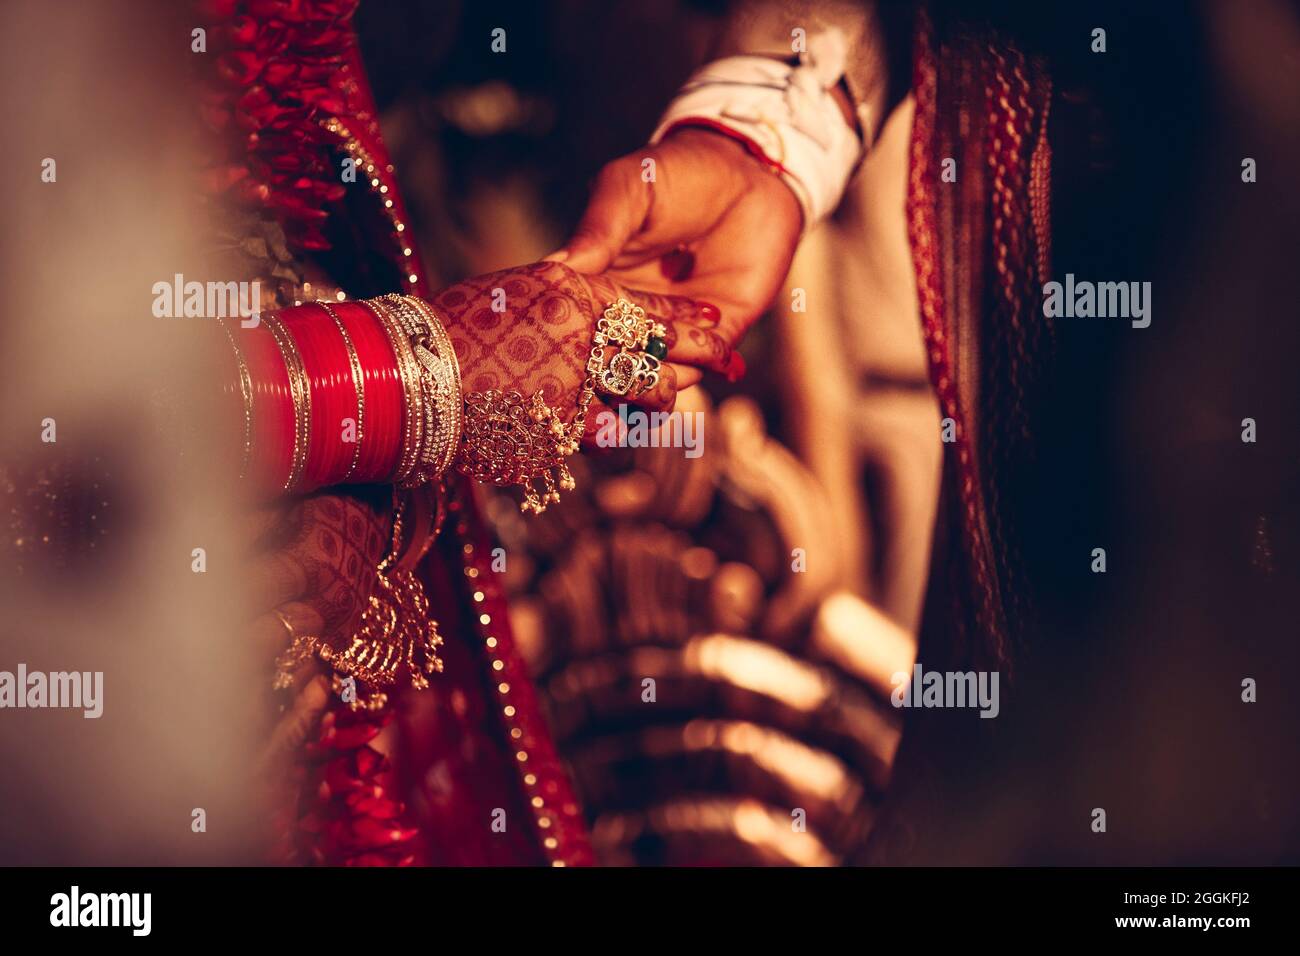 Deux mains se touchent lors d'une cérémonie de mariage en Inde Banque D'Images